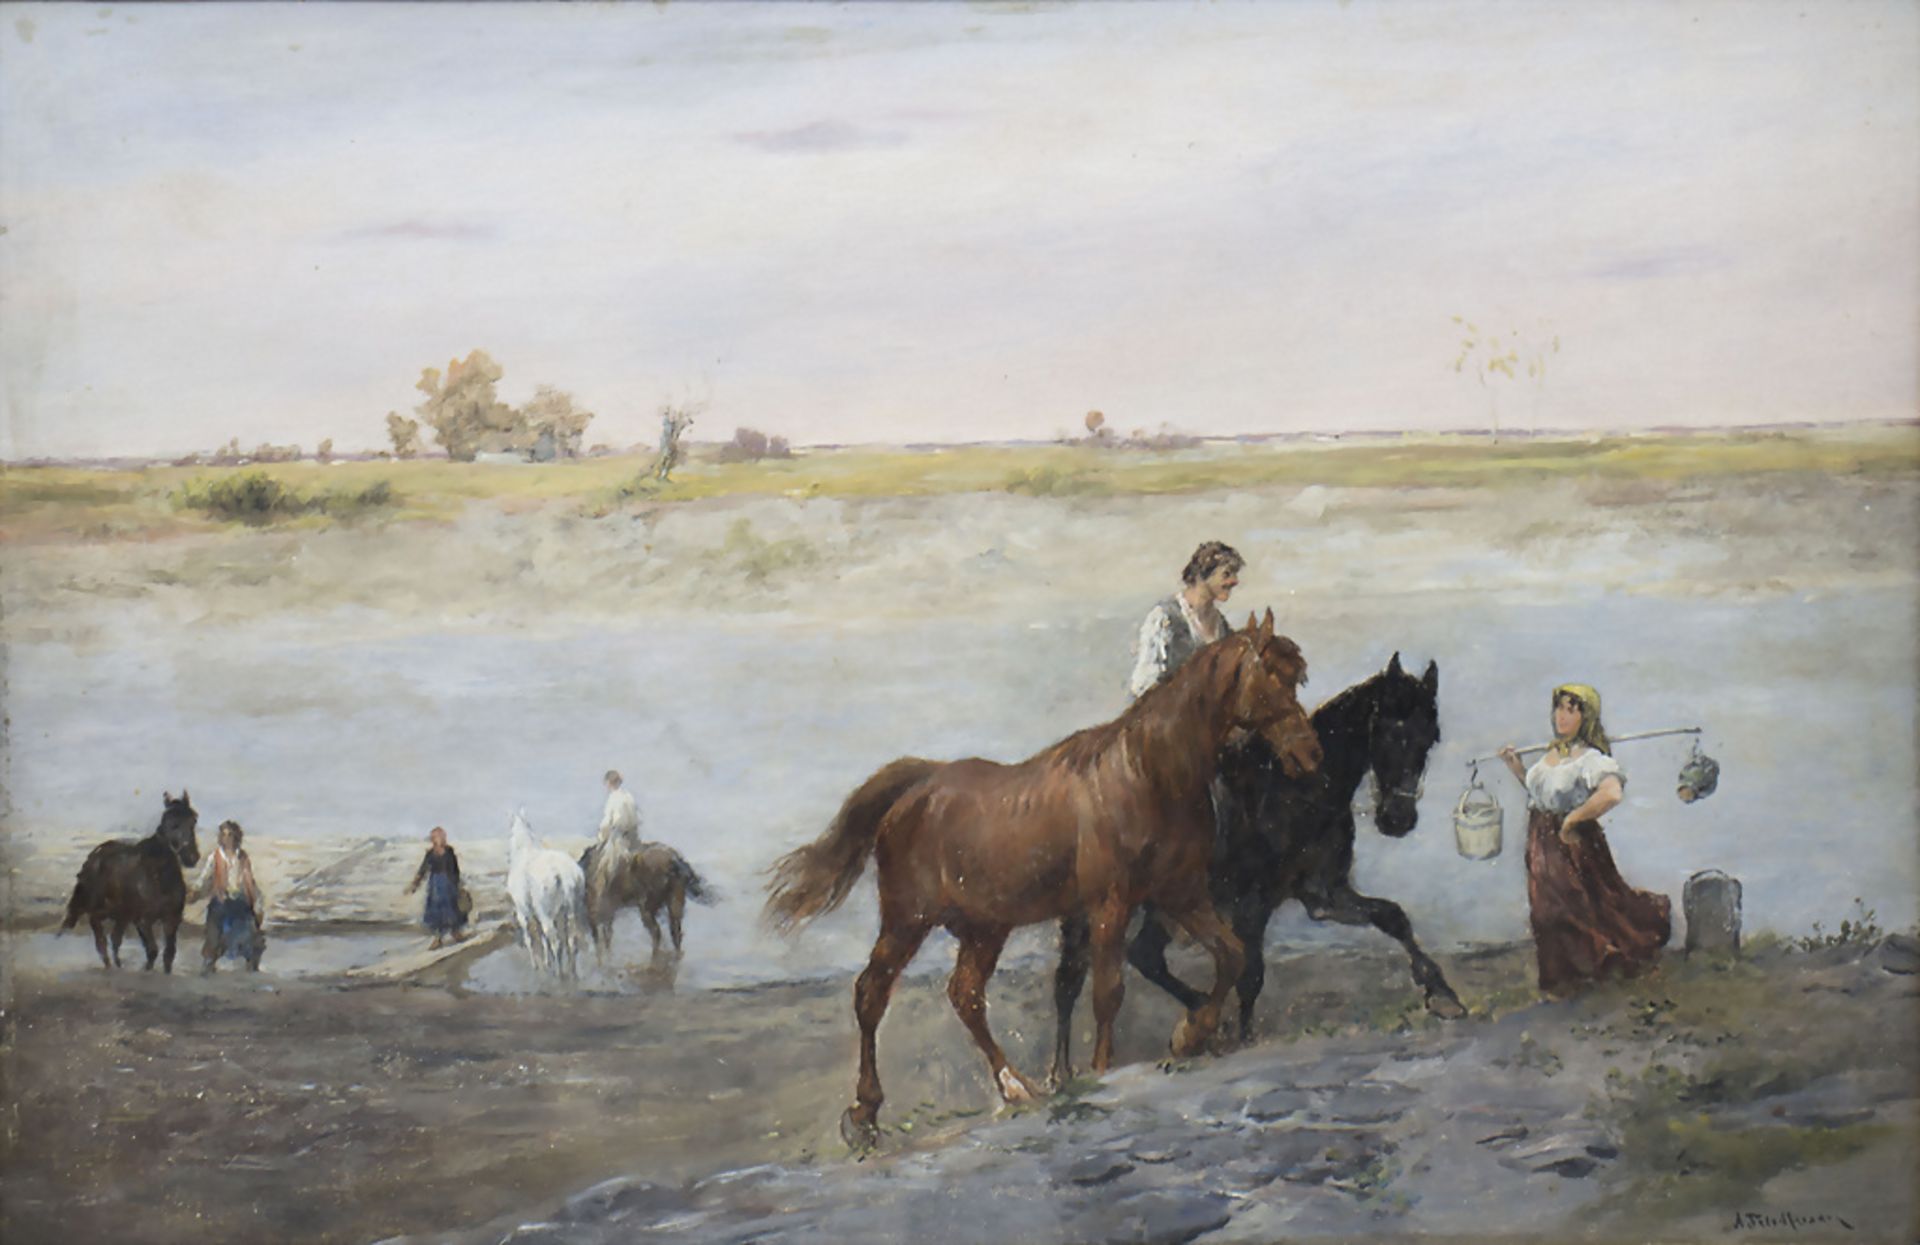 Alfred FRIEDLÄNDER (1860-1933), Ritter von Malheim, 'Uferlandschaft mit Pferden' / 'A ...